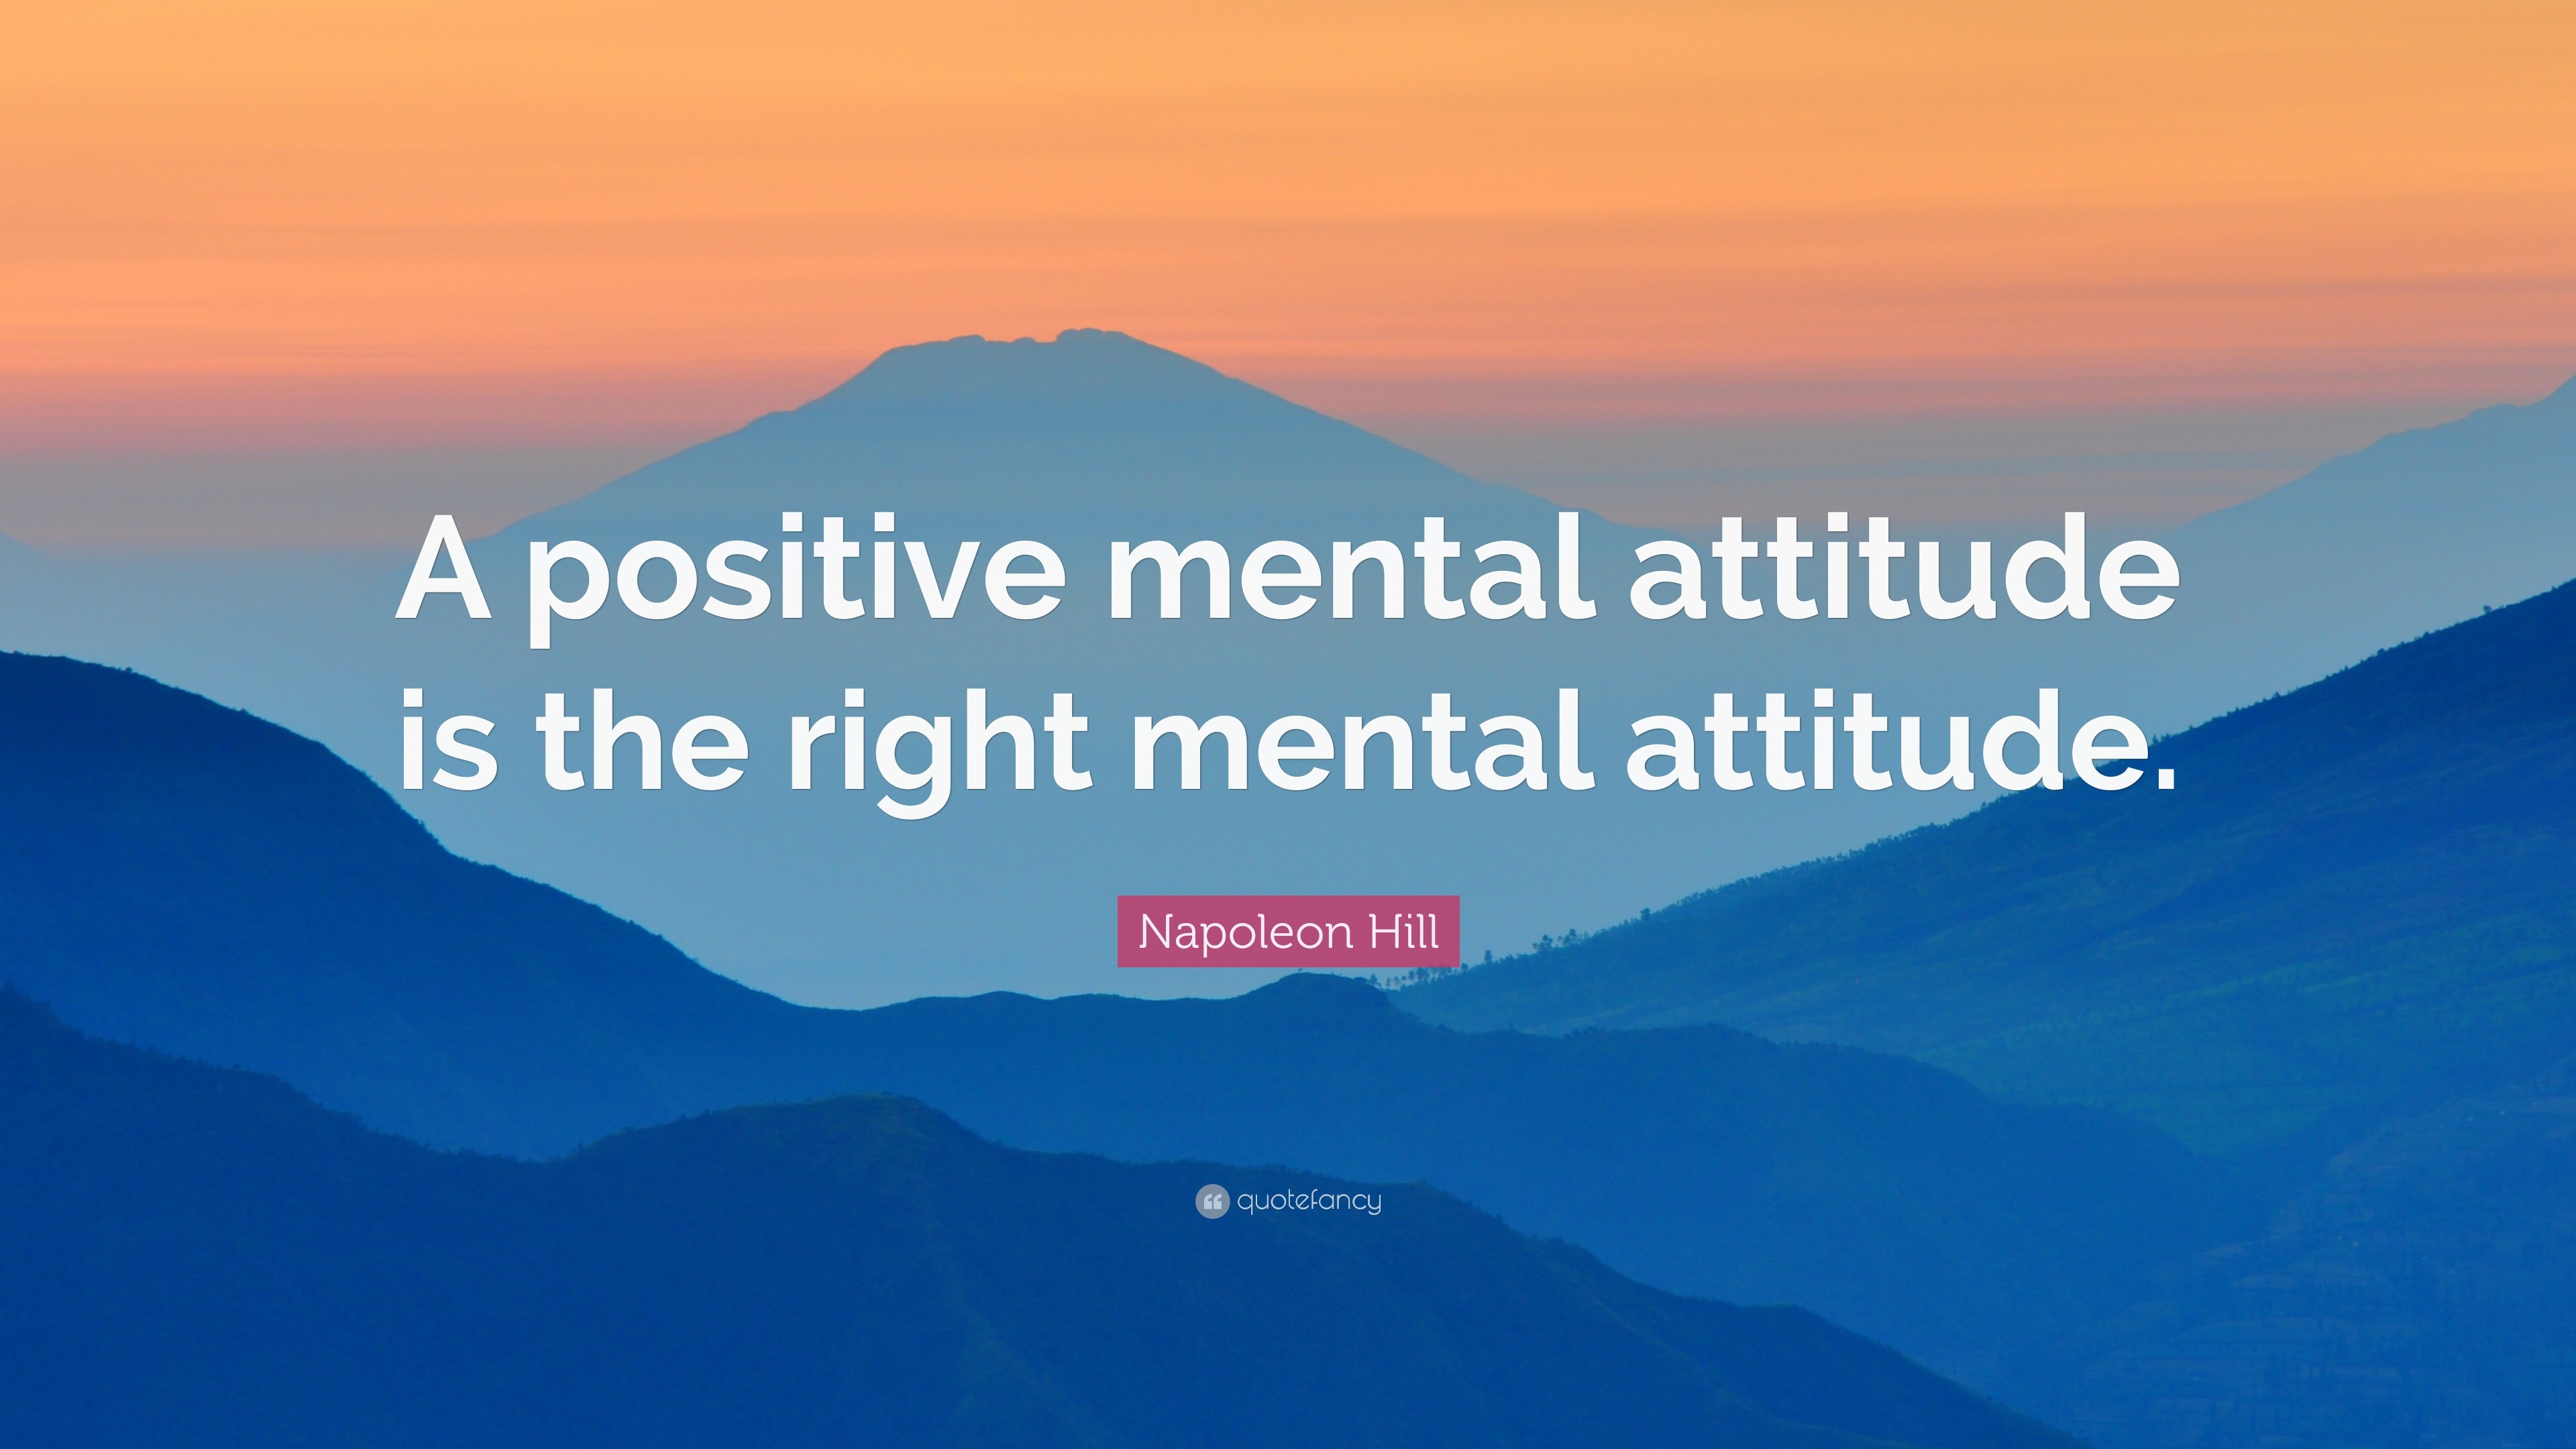 3840x2160 Napoleon Hill Quote: “A positive mental attitude is the right mental  attitude.”